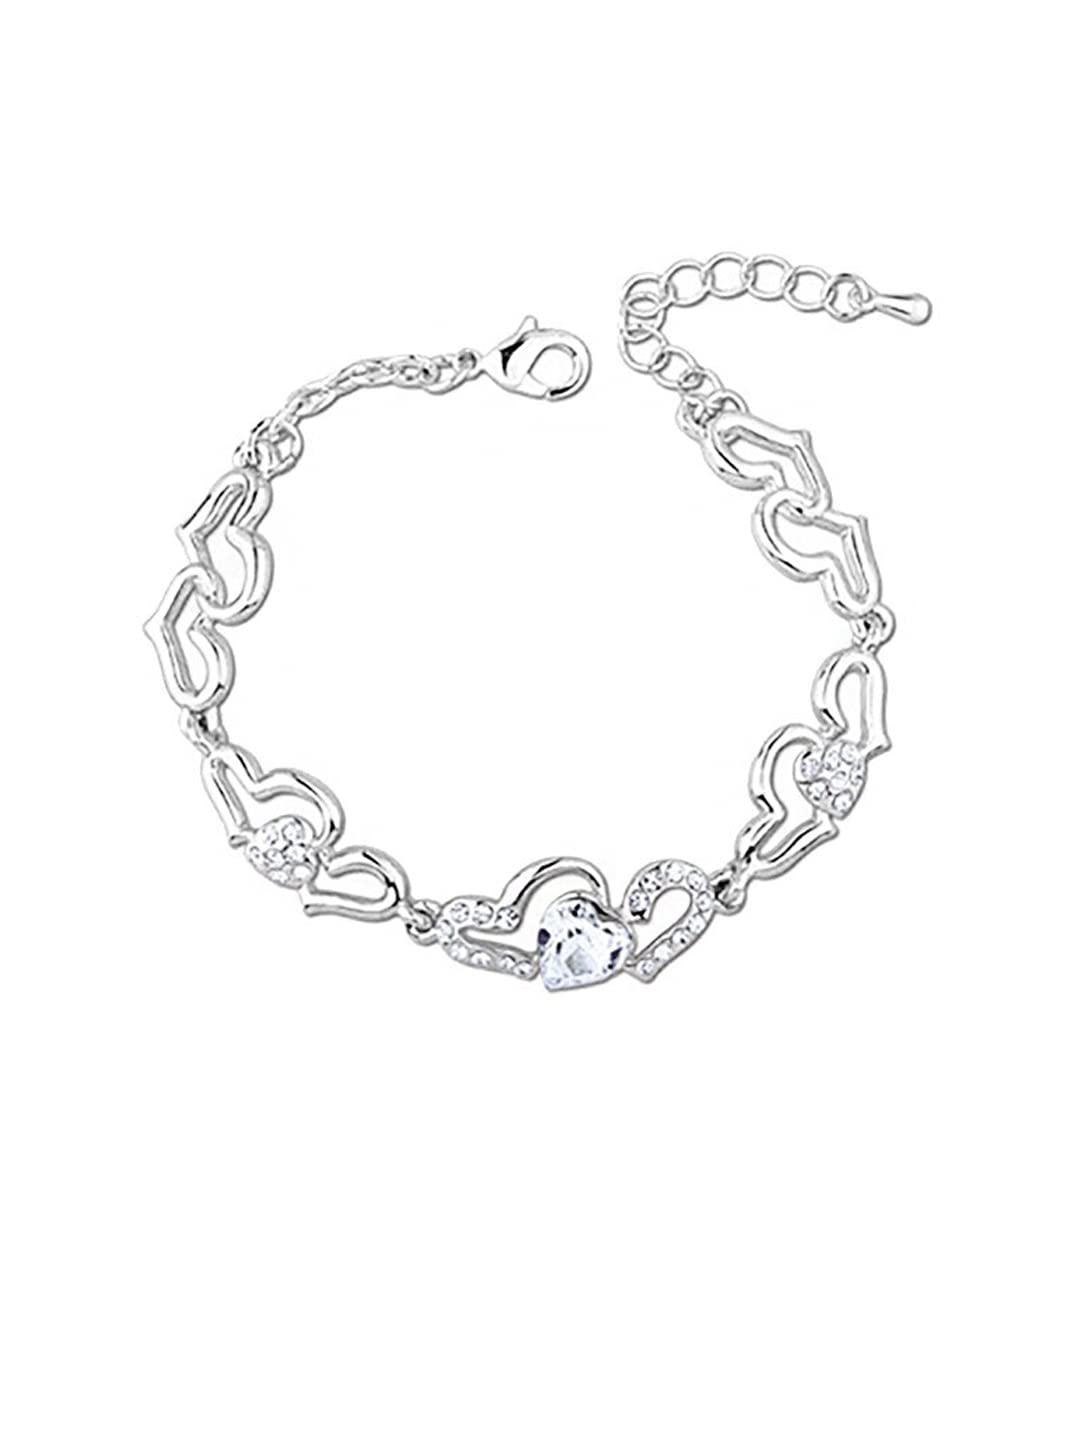 Black Stainless Steel Chain Bracelet For Men | Classy Men Collection